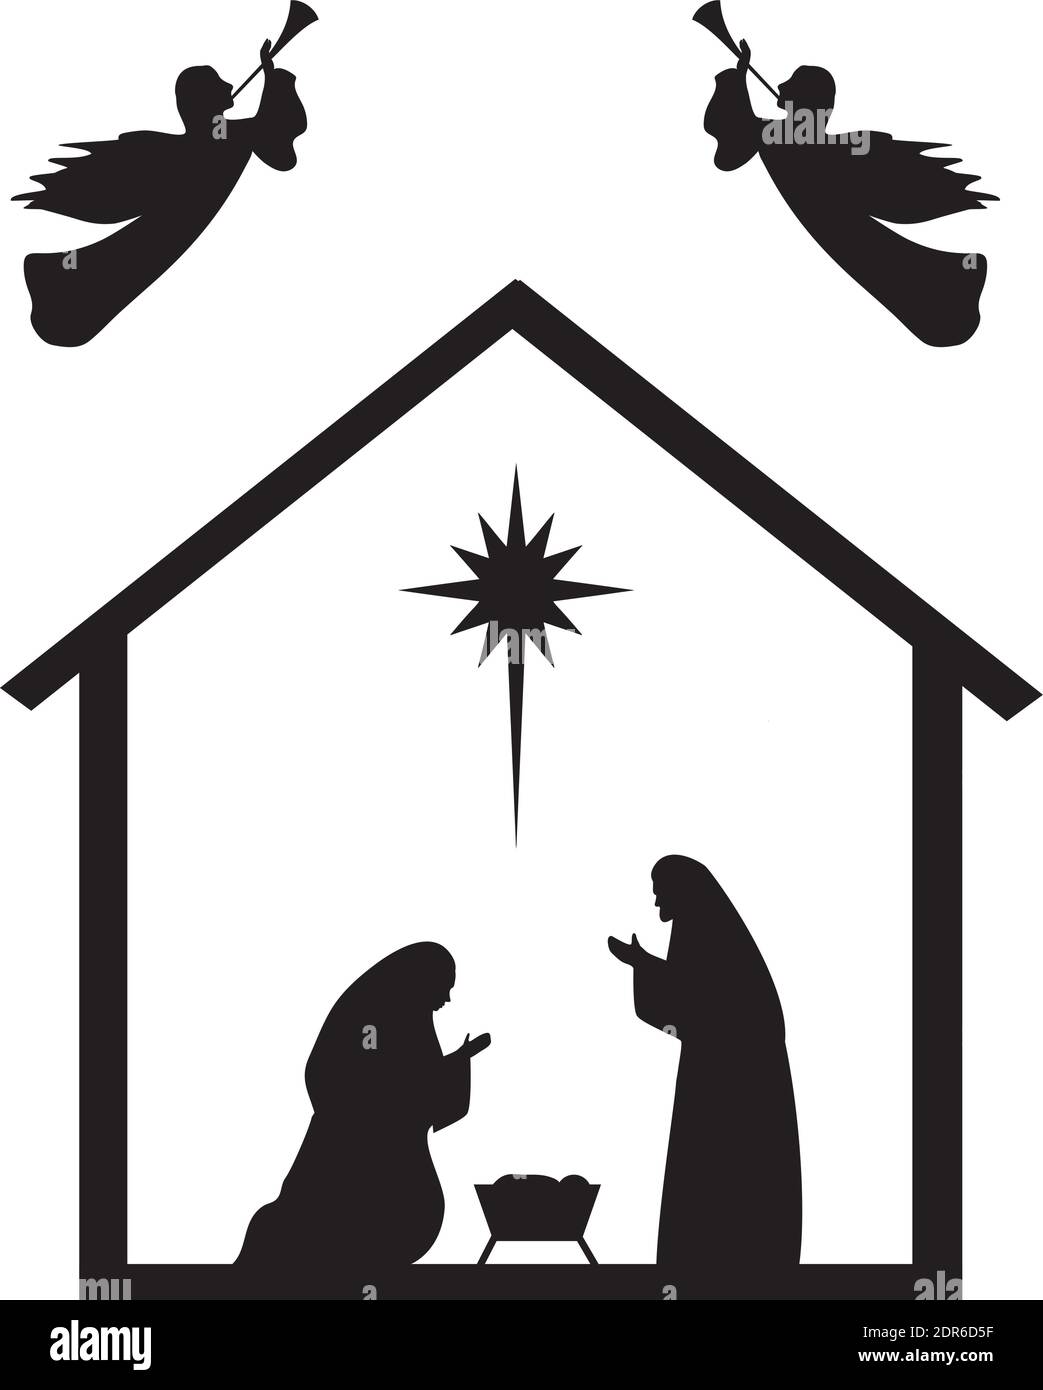 vektor-Illustration der Krippe. Frieden, Freude, Weihnachten Hintergrund mit einem Stern. Stock Vektor